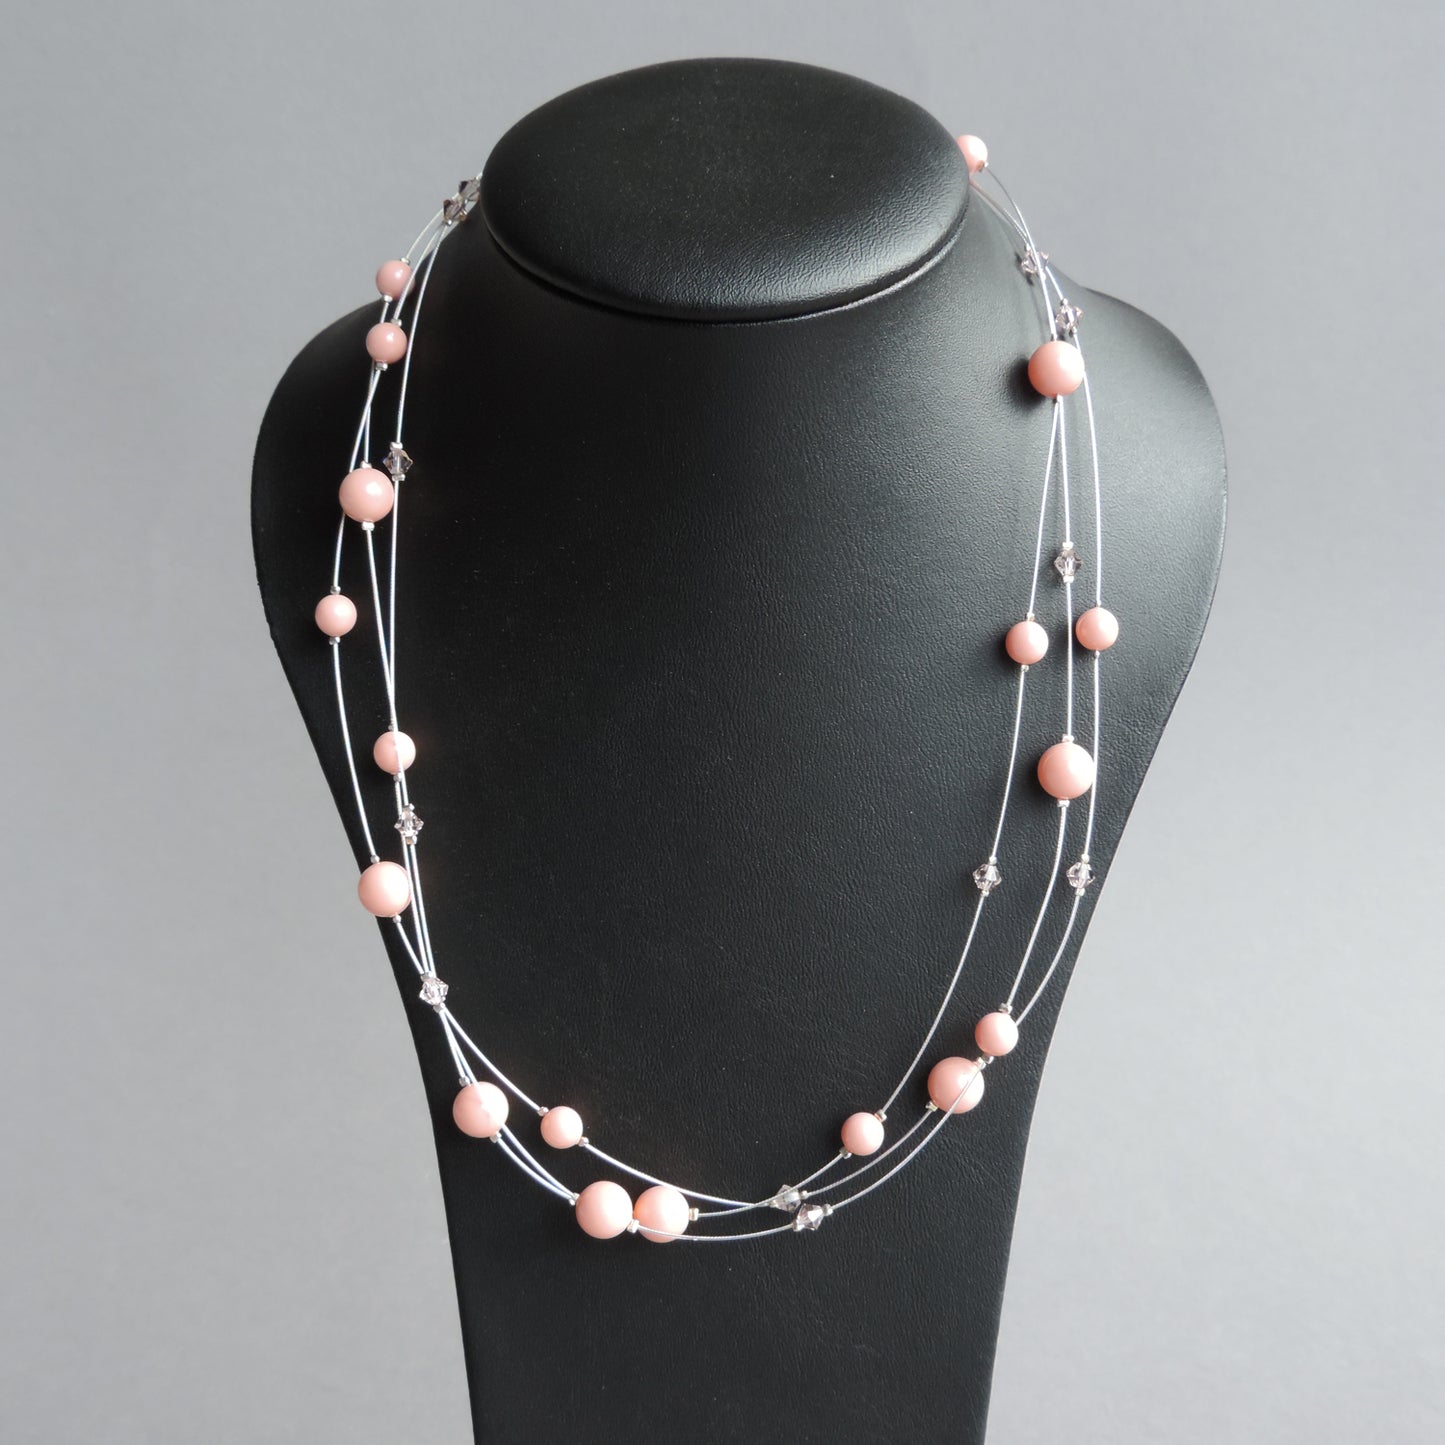 Coral pink bridesmaids necklaces